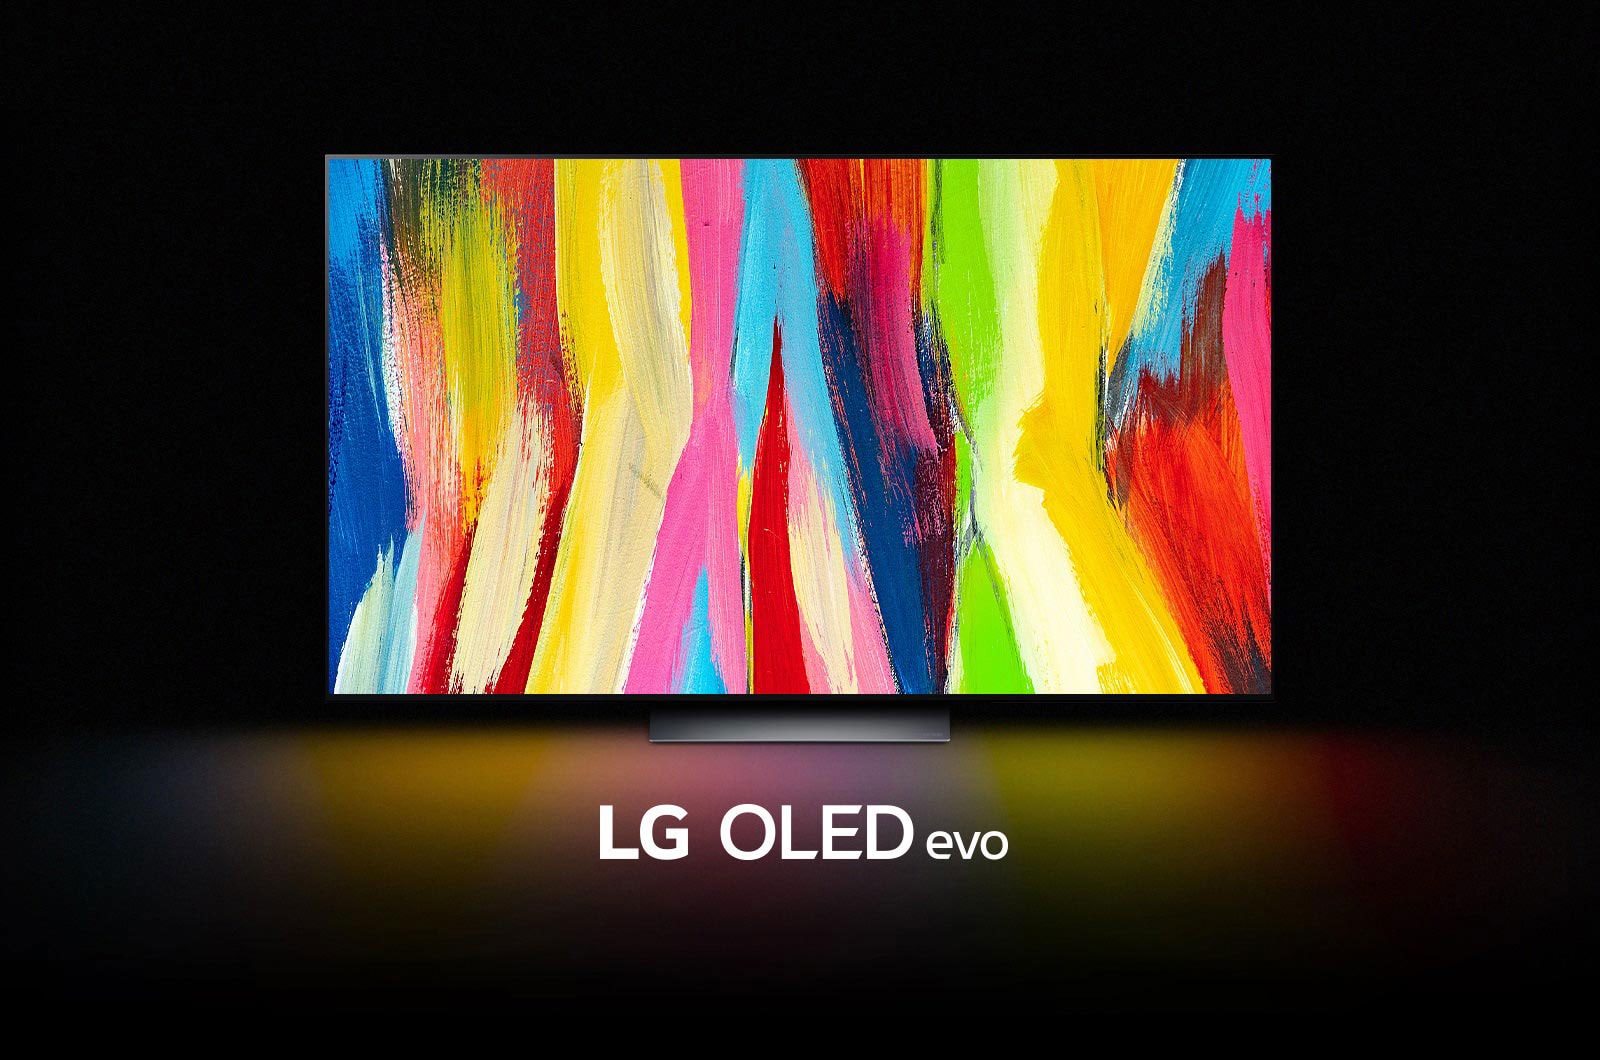 LG OLED C2 stoji v temni sobi s pisano abstraktno umetnino navpičnih črt na zaslonu in napisom »LG OLED evo« pod njim.